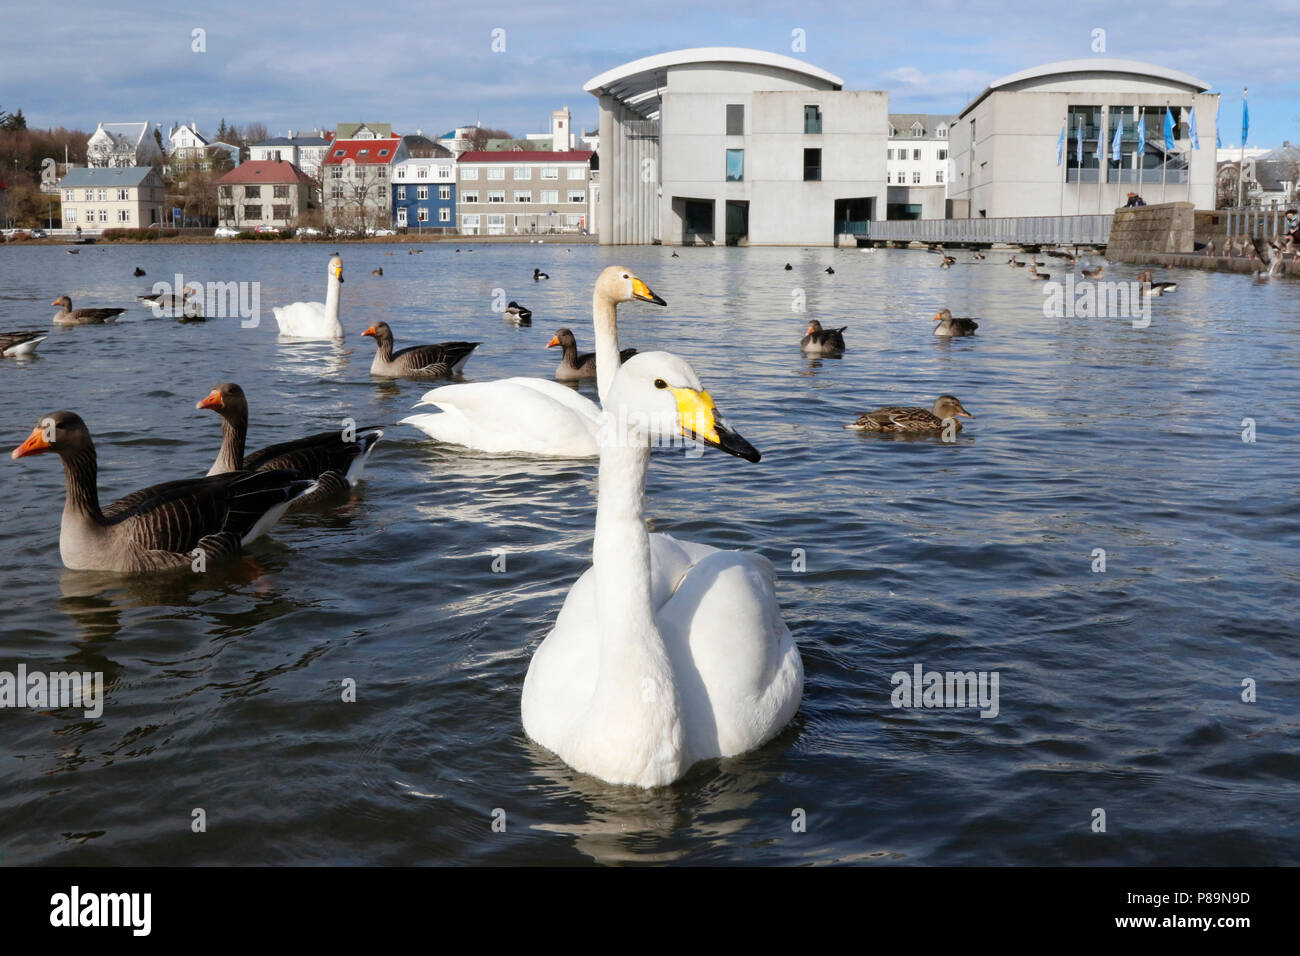 Wilde Zwaan voeren; feeding a Whooper Swan; Stock Photo